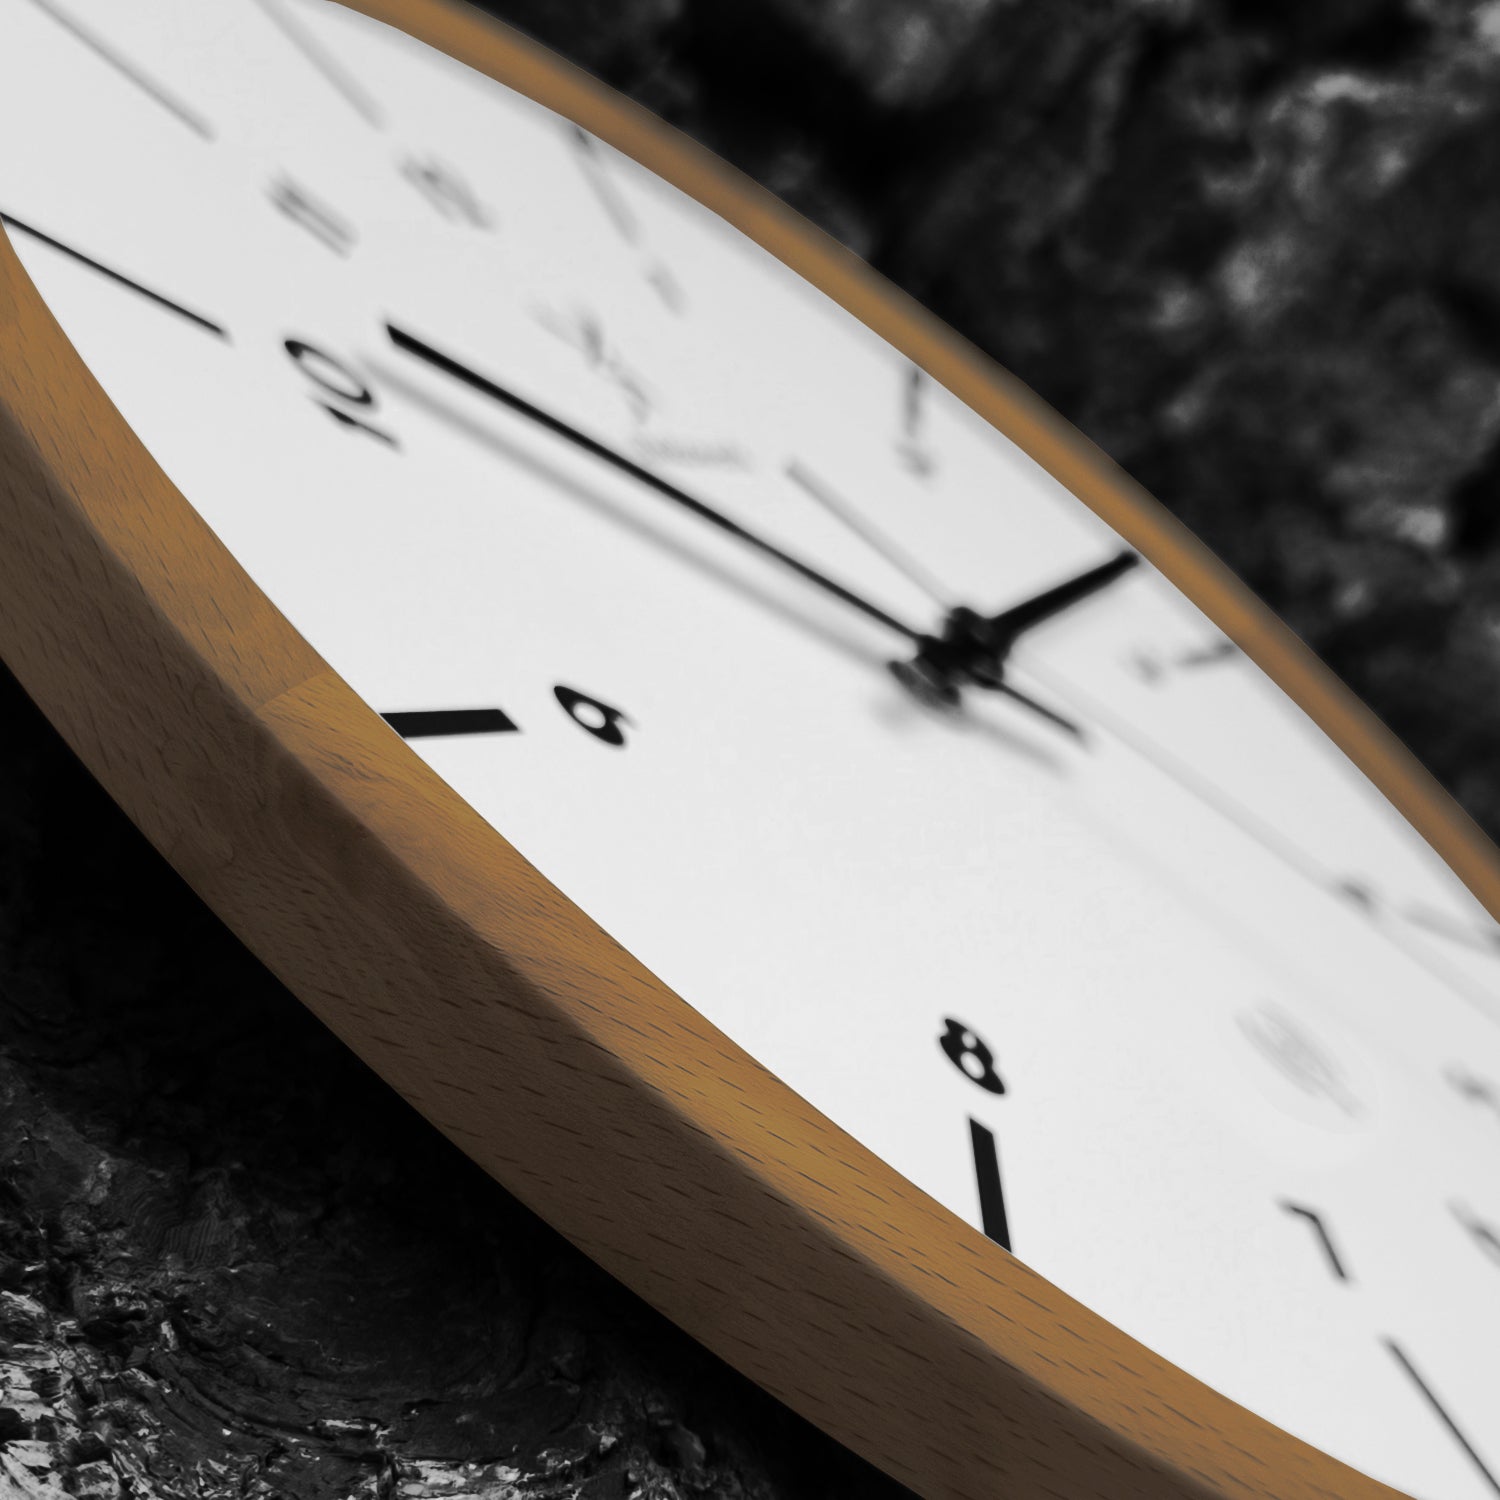 Holzwerk RIETBERG Holz Funkwanduhr, Wanduhr im skandinavischem Design, 32 cm Holz Funk Wand Uhr lautlos ohne Tick Geräusche, braun, weiß, seitlich liegend